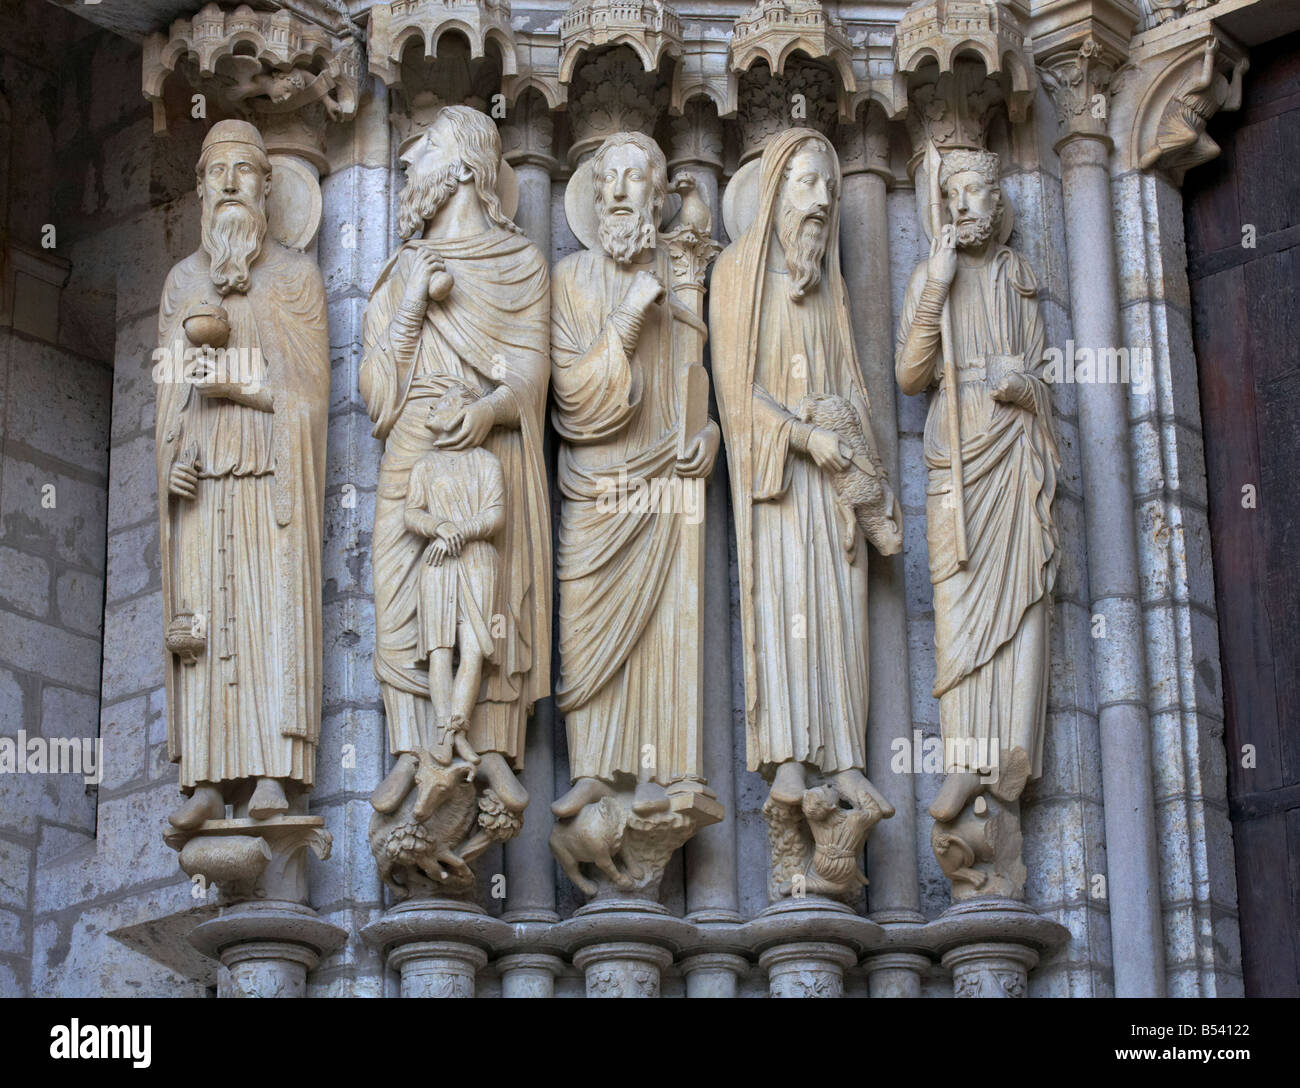 13e siècle les statues de Melchizédek, Abraham, Moïse, Samuel, et David, la cathédrale de Chartres Eure et Loir France Banque D'Images